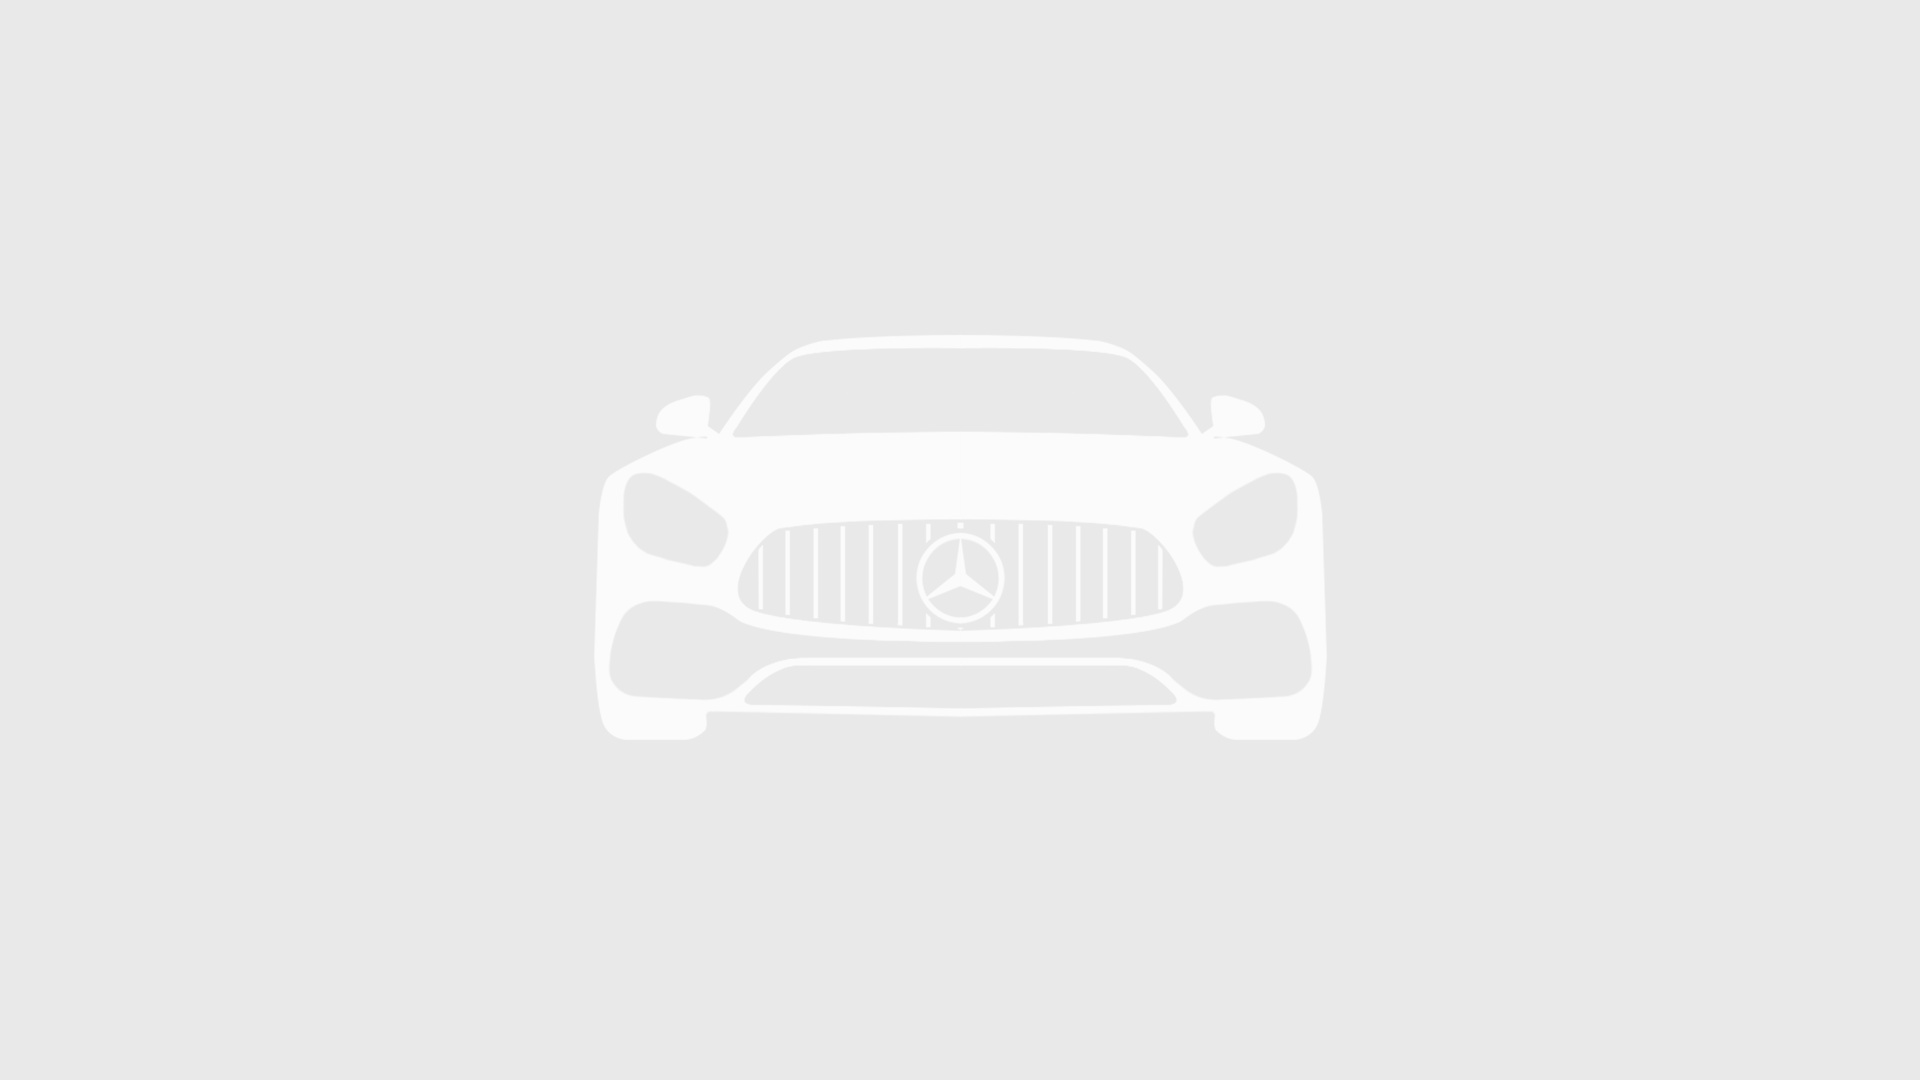 Mercedes-Benz комплектация Avantgarde / E 250 d двигатель 2.1 литра (190 л.с.) Коричневый